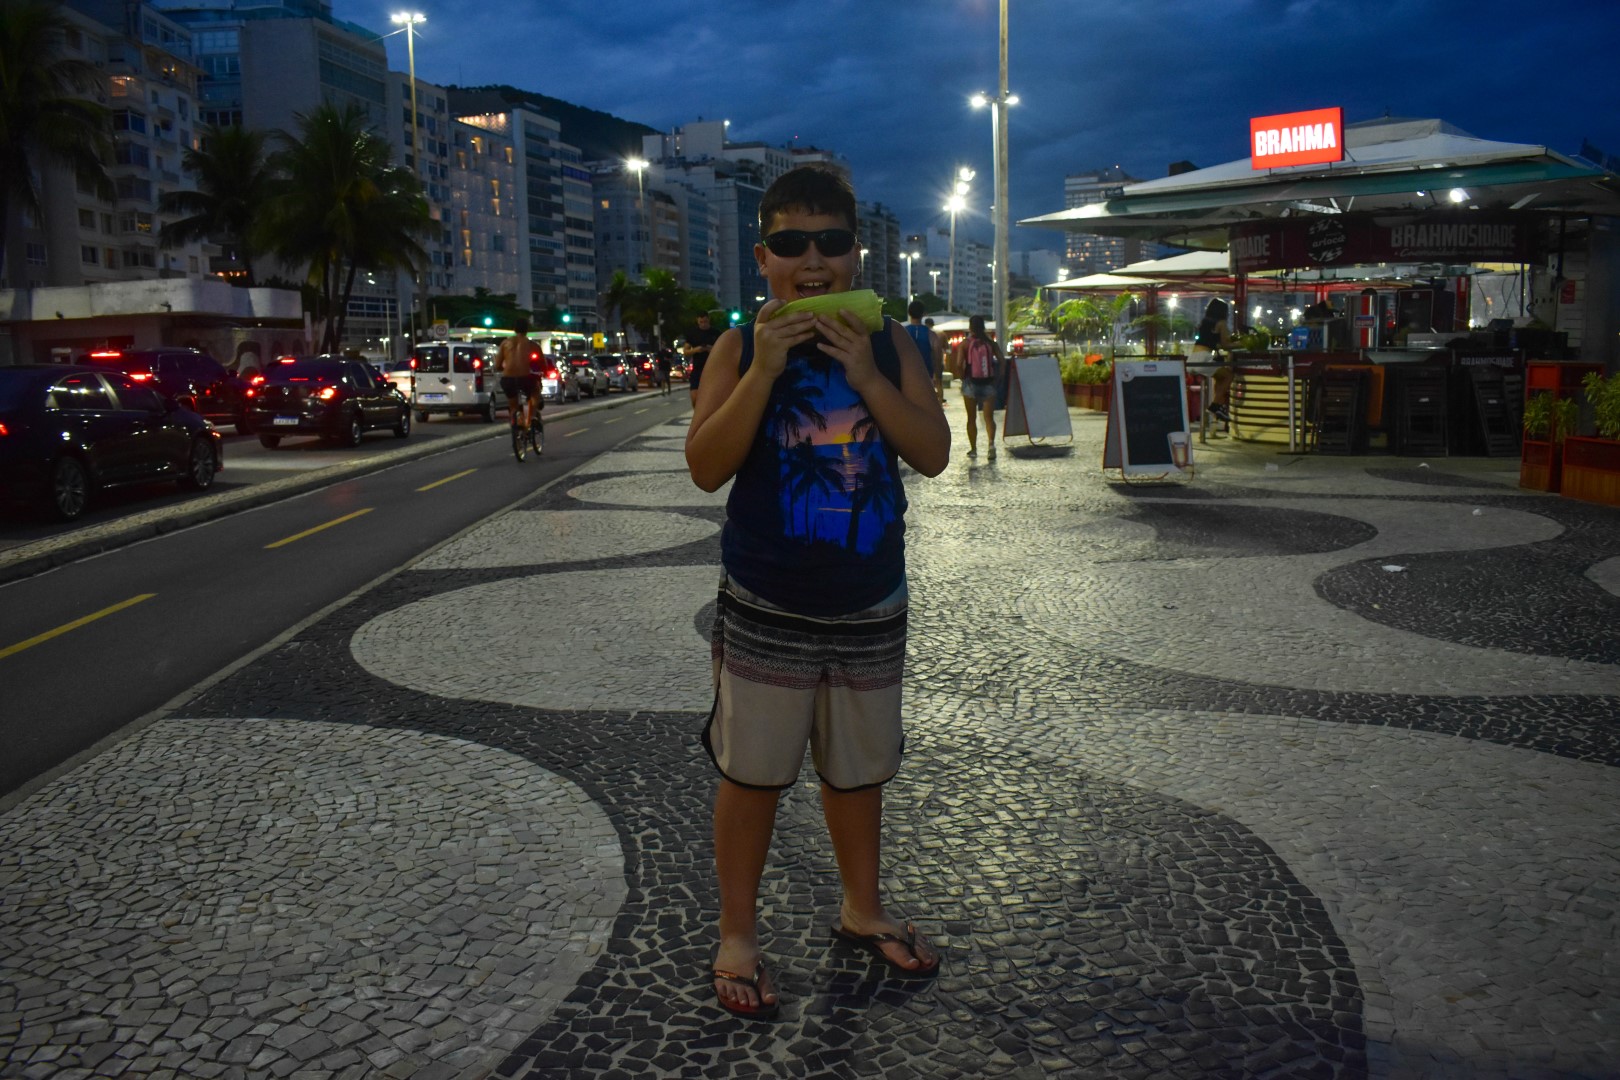 Avenida Atlântica - Copacabana, Rio de Janeiro - State of Rio de Janeiro